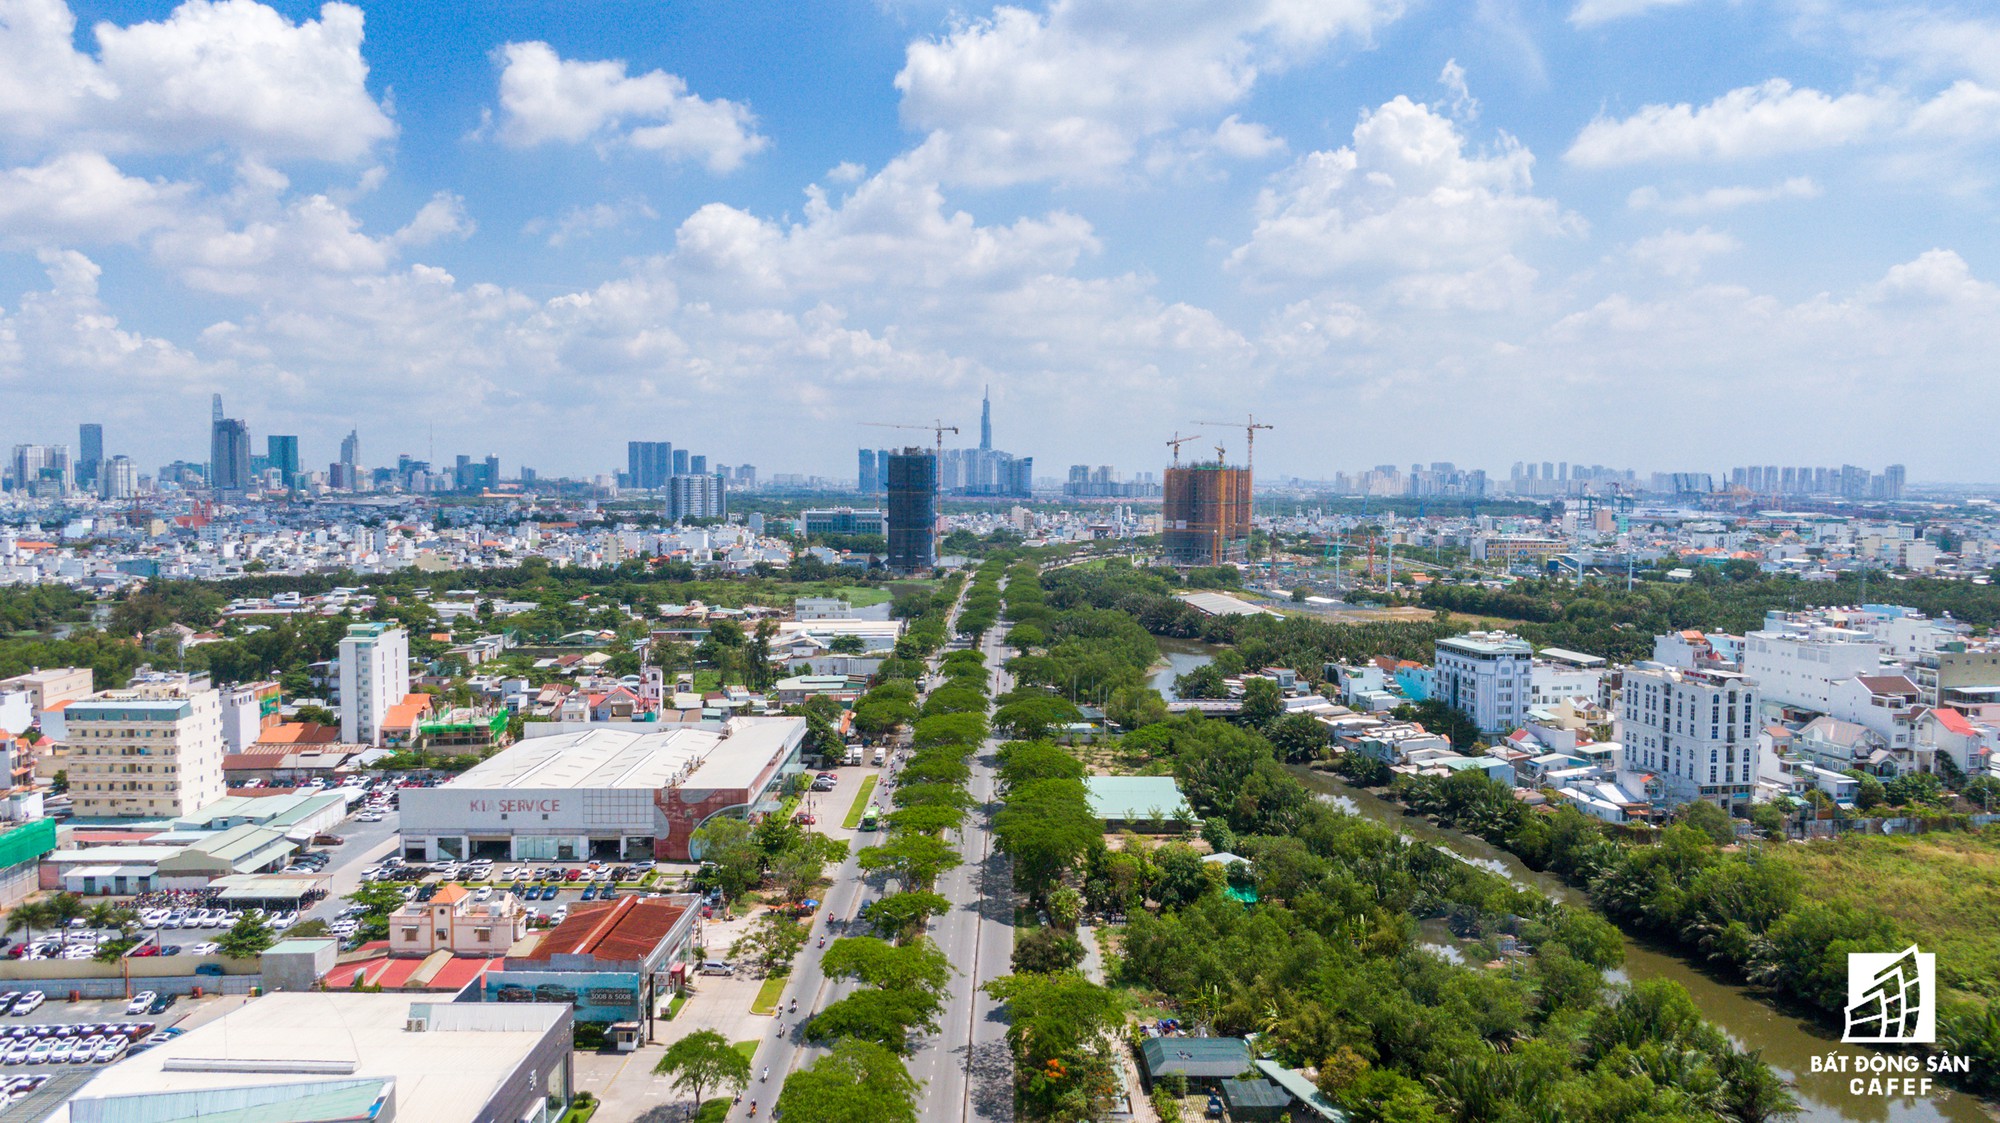 Toàn cảnh đại lộ tỷ đô đã tạo nên một thị trường bất động sản rất riêng cho khu Nam Sài Gòn - Ảnh 5.